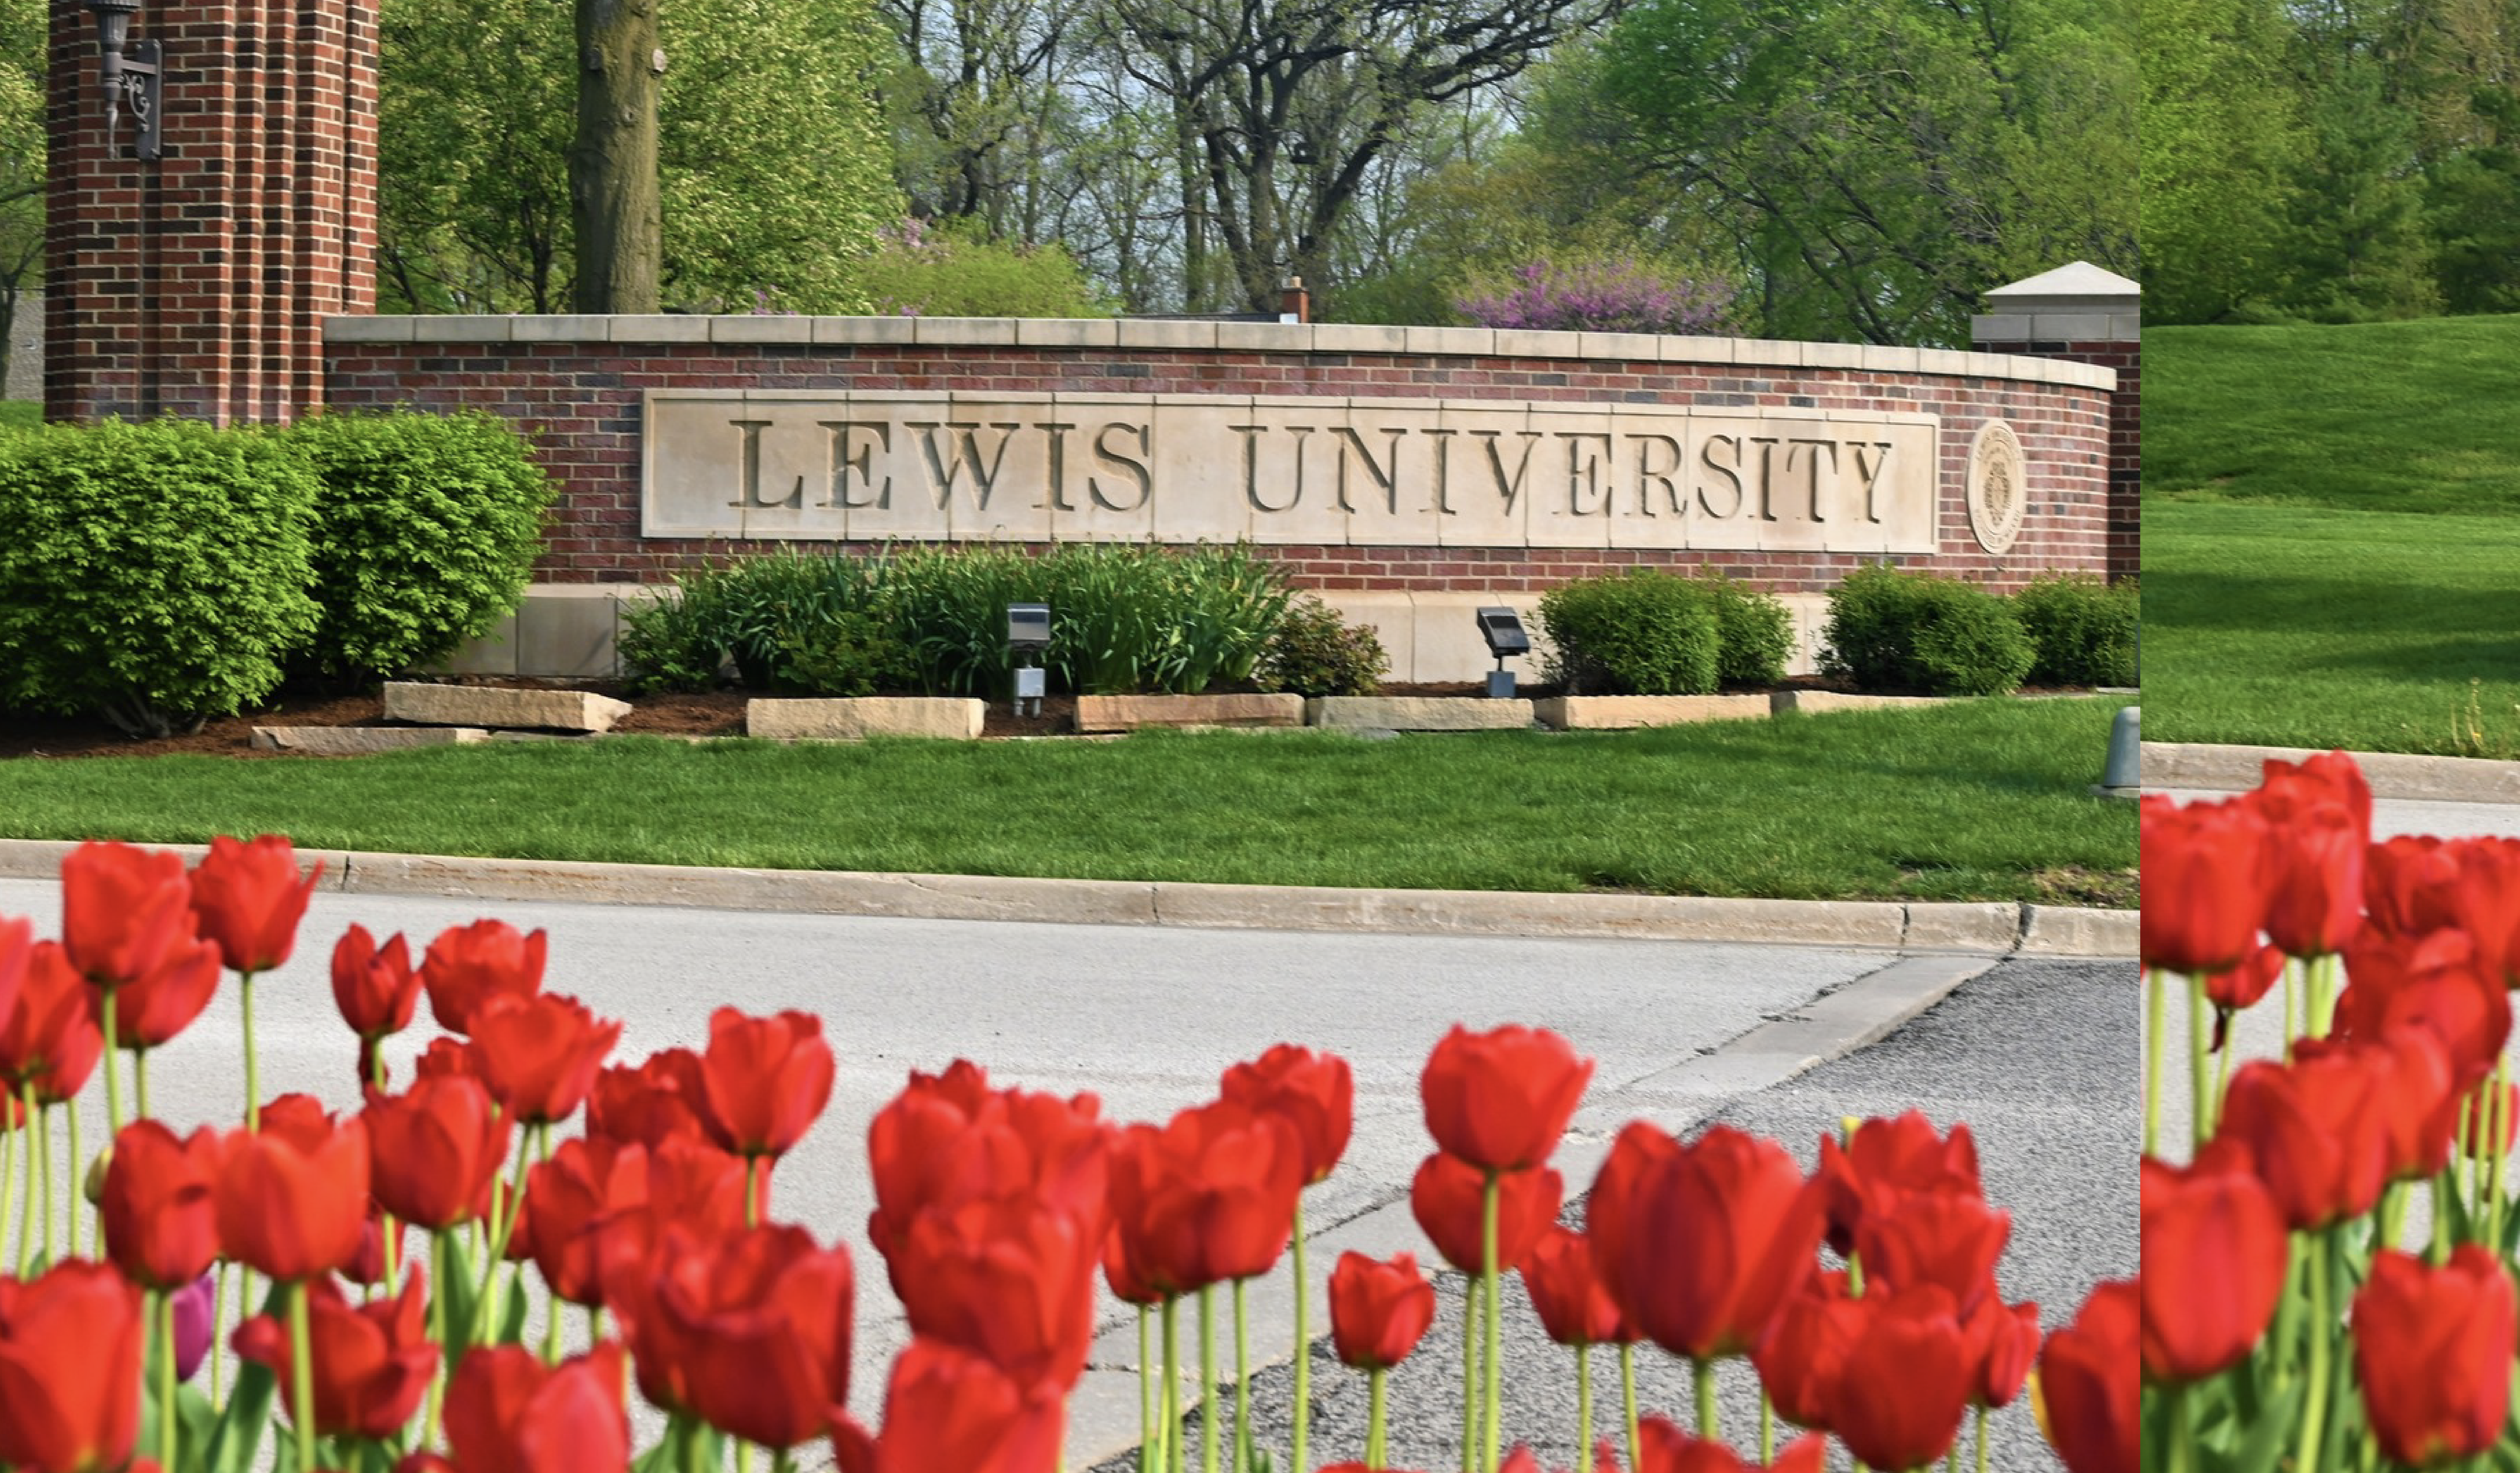 Lewis University_Image